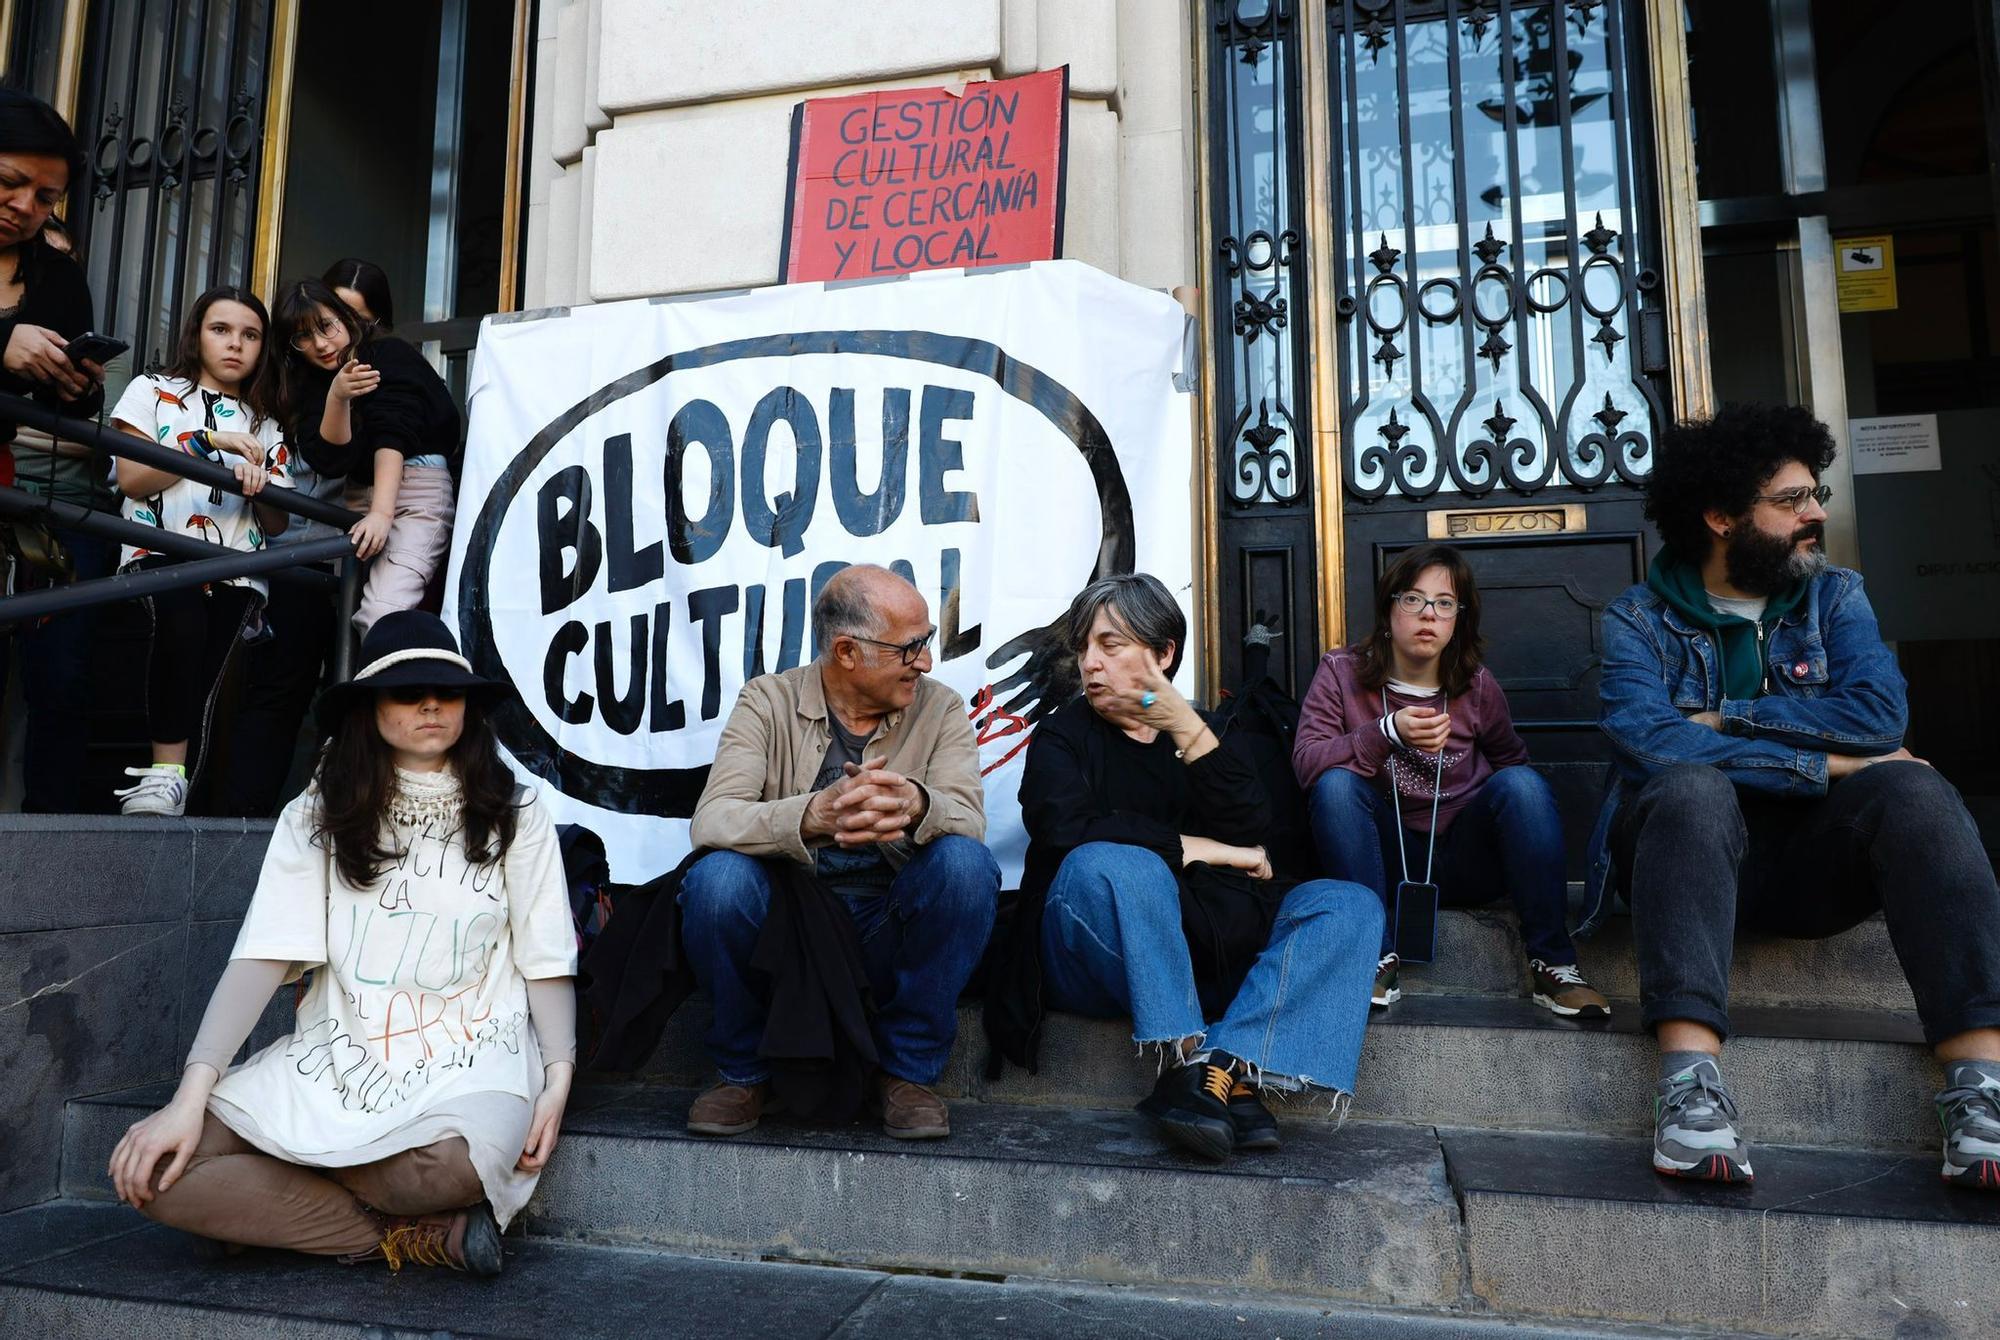 En imágenes | Nueva protesta de Bloque Cultural en la plaza España de Zaragoza